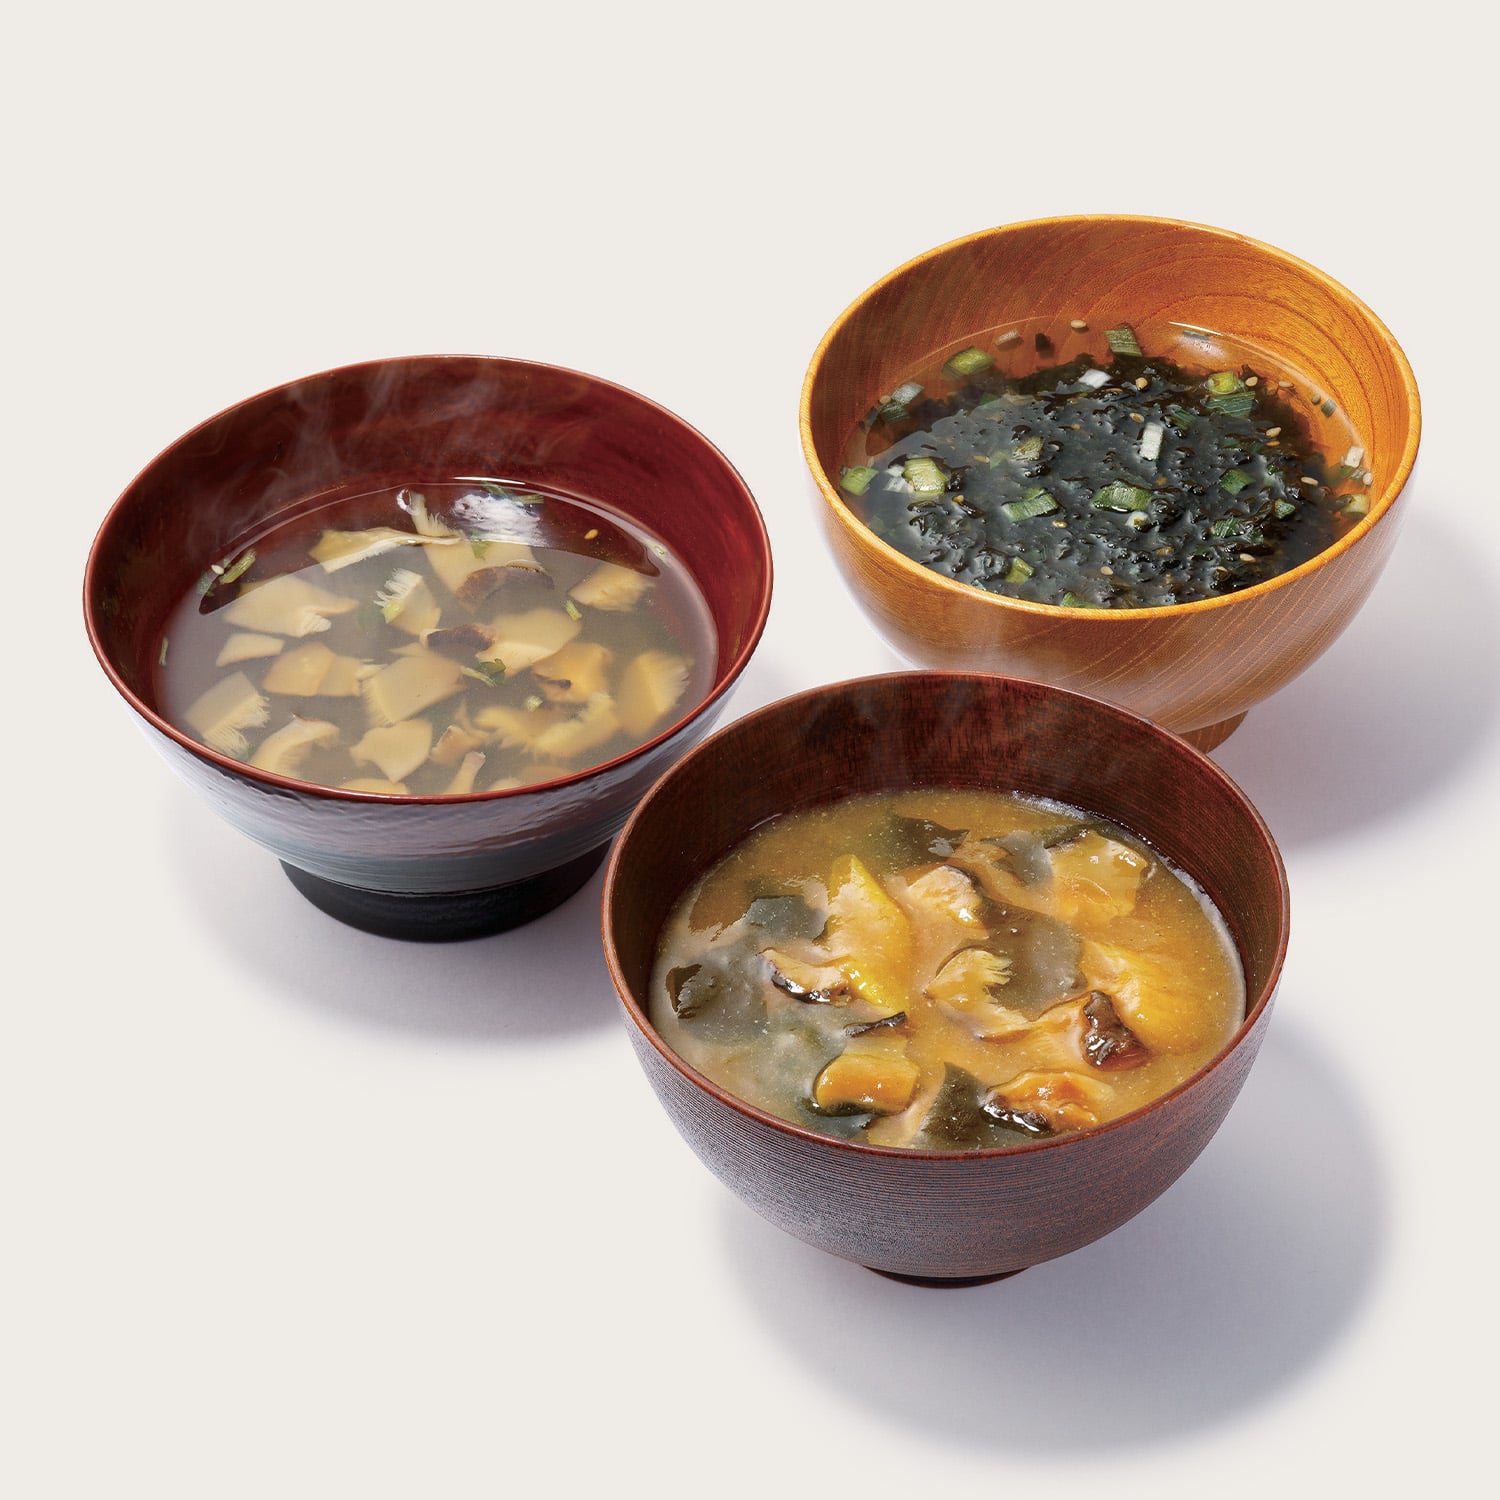 松岡椎茸 和素材スープ詰合せ